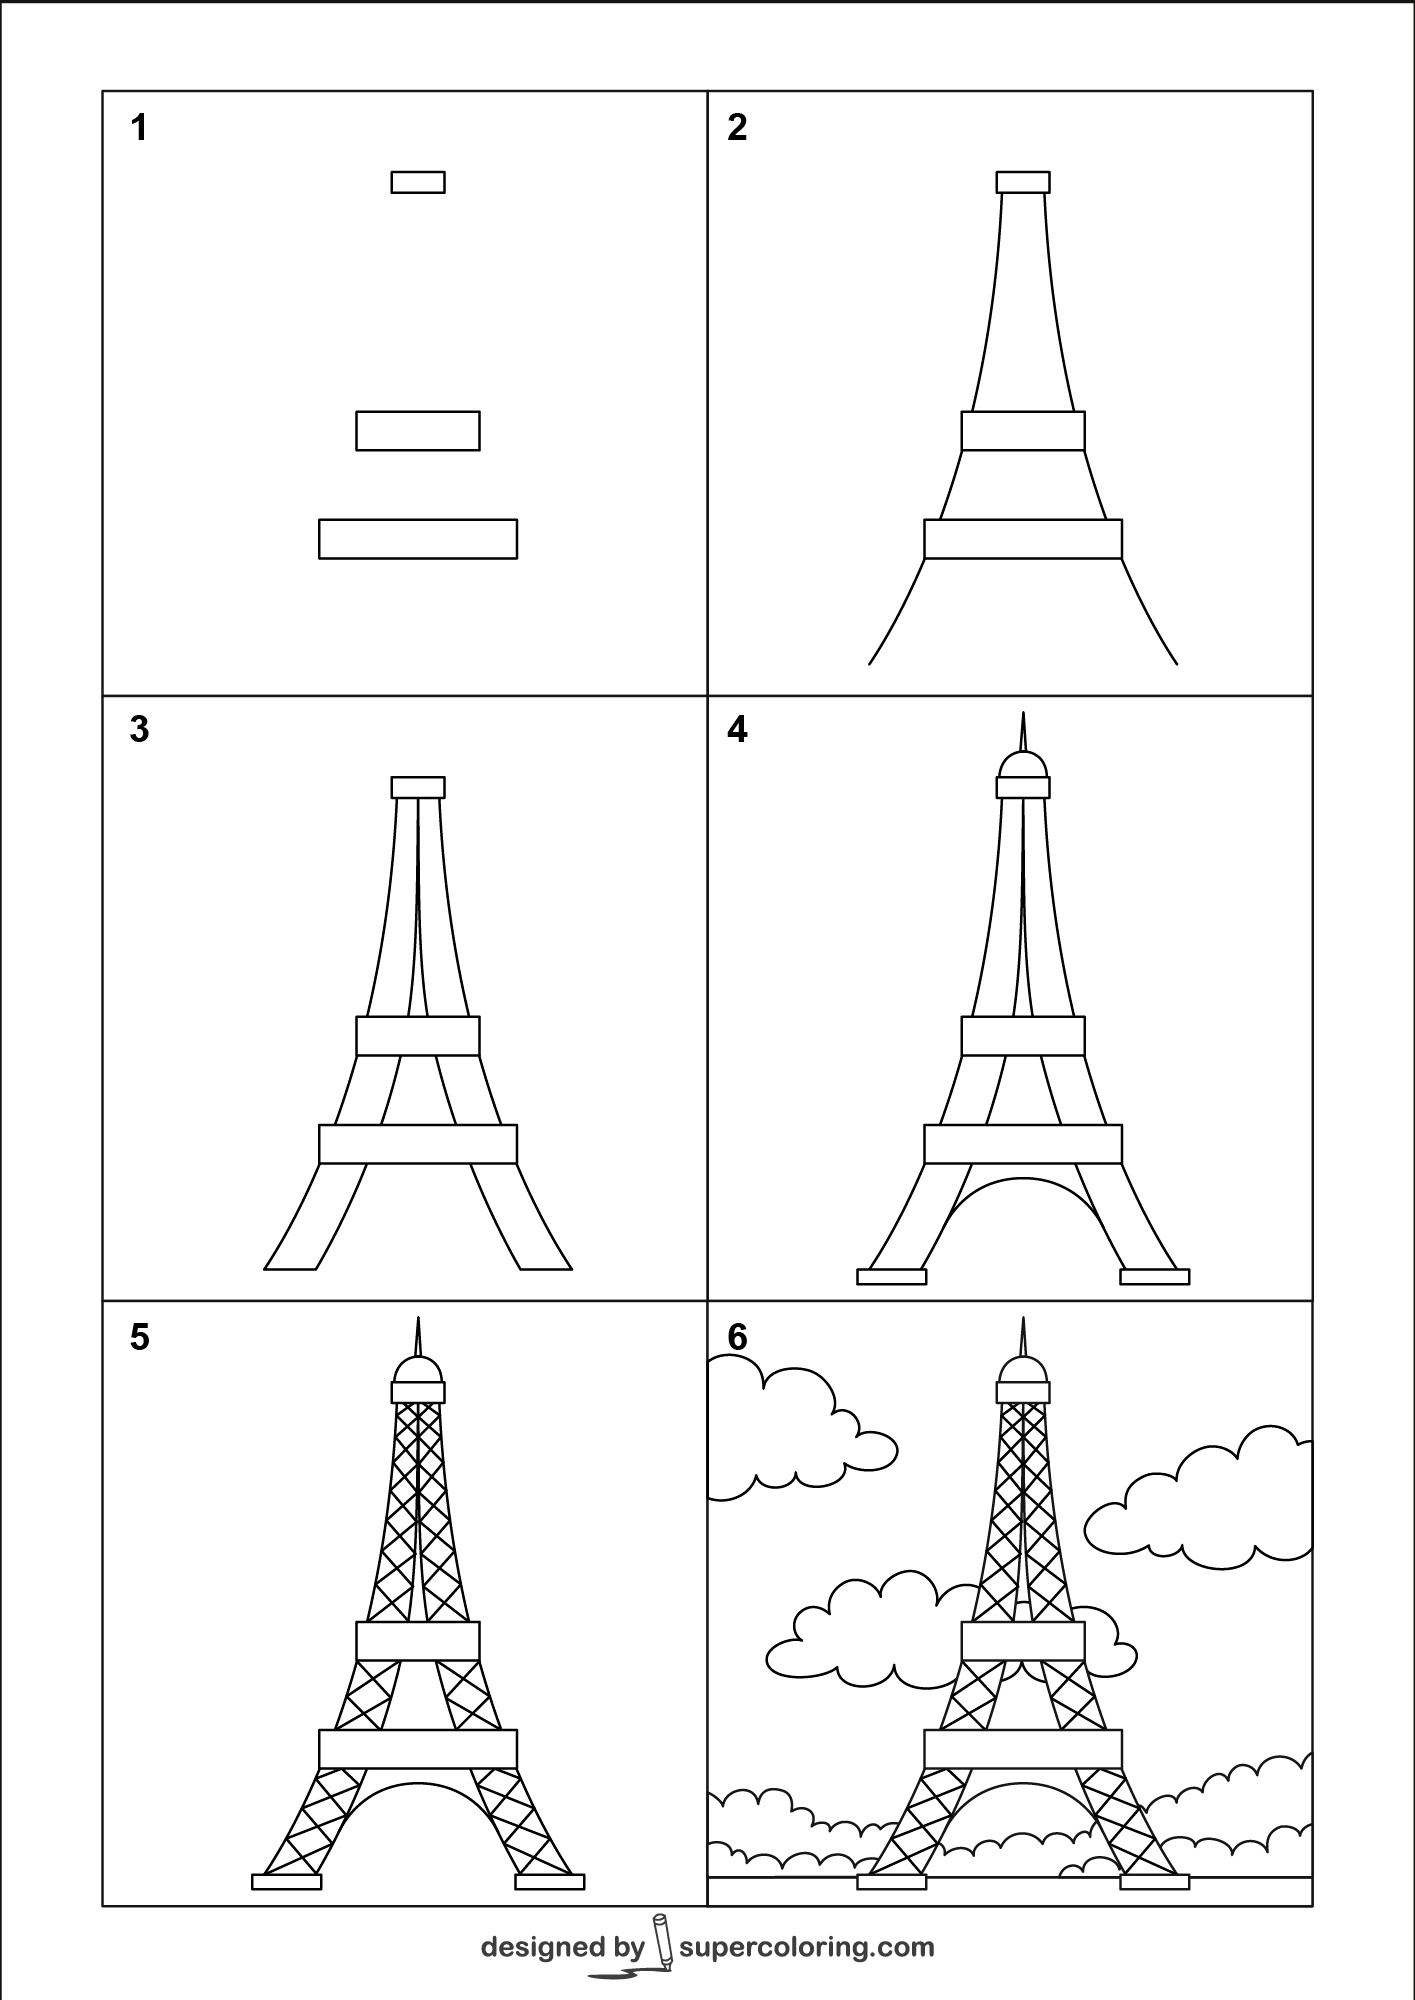 Idee mit dem Eiffelturm 6 zeichnen ideen